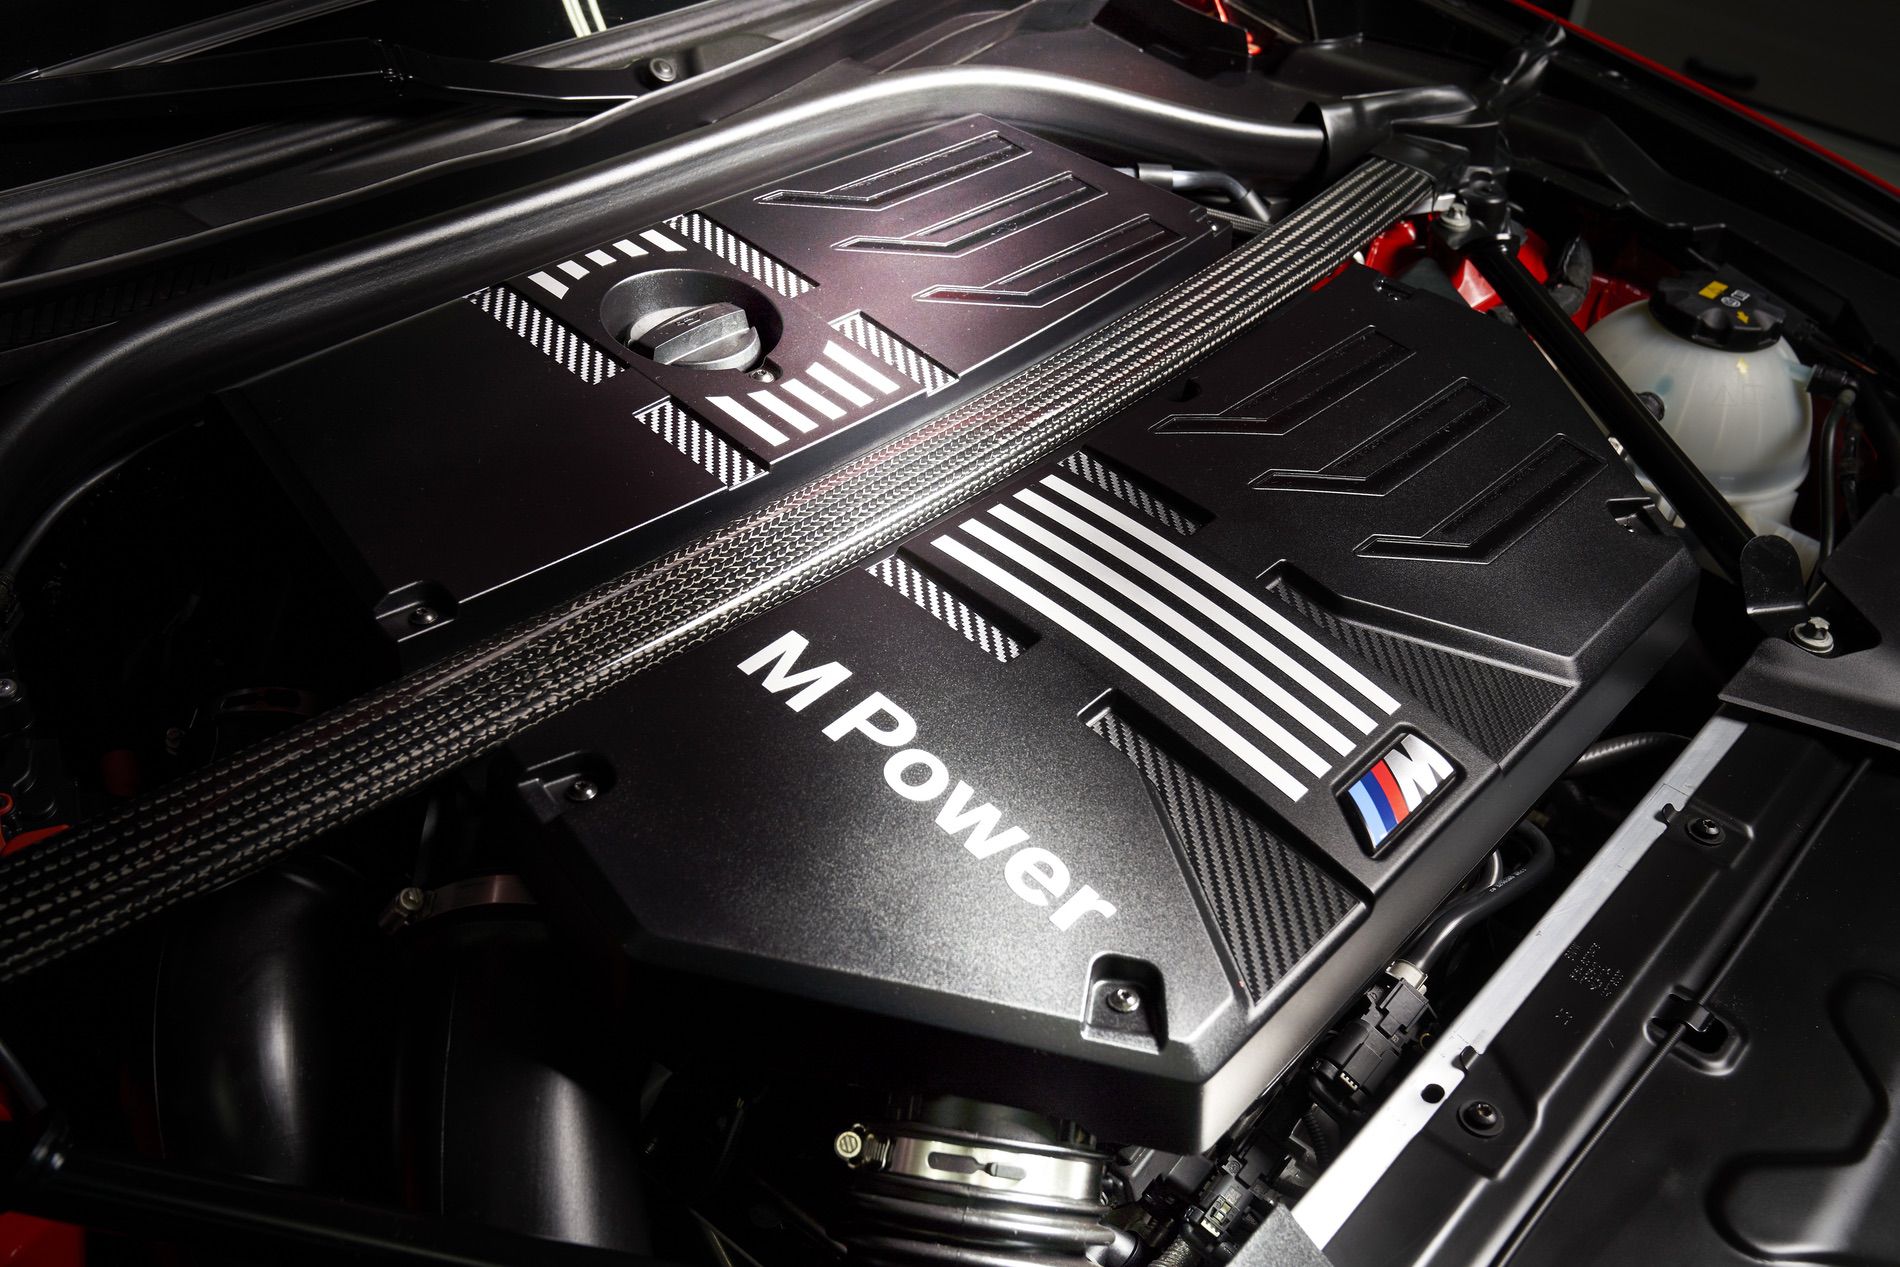 The BMW S58 engine. Image via BMW BLOG.